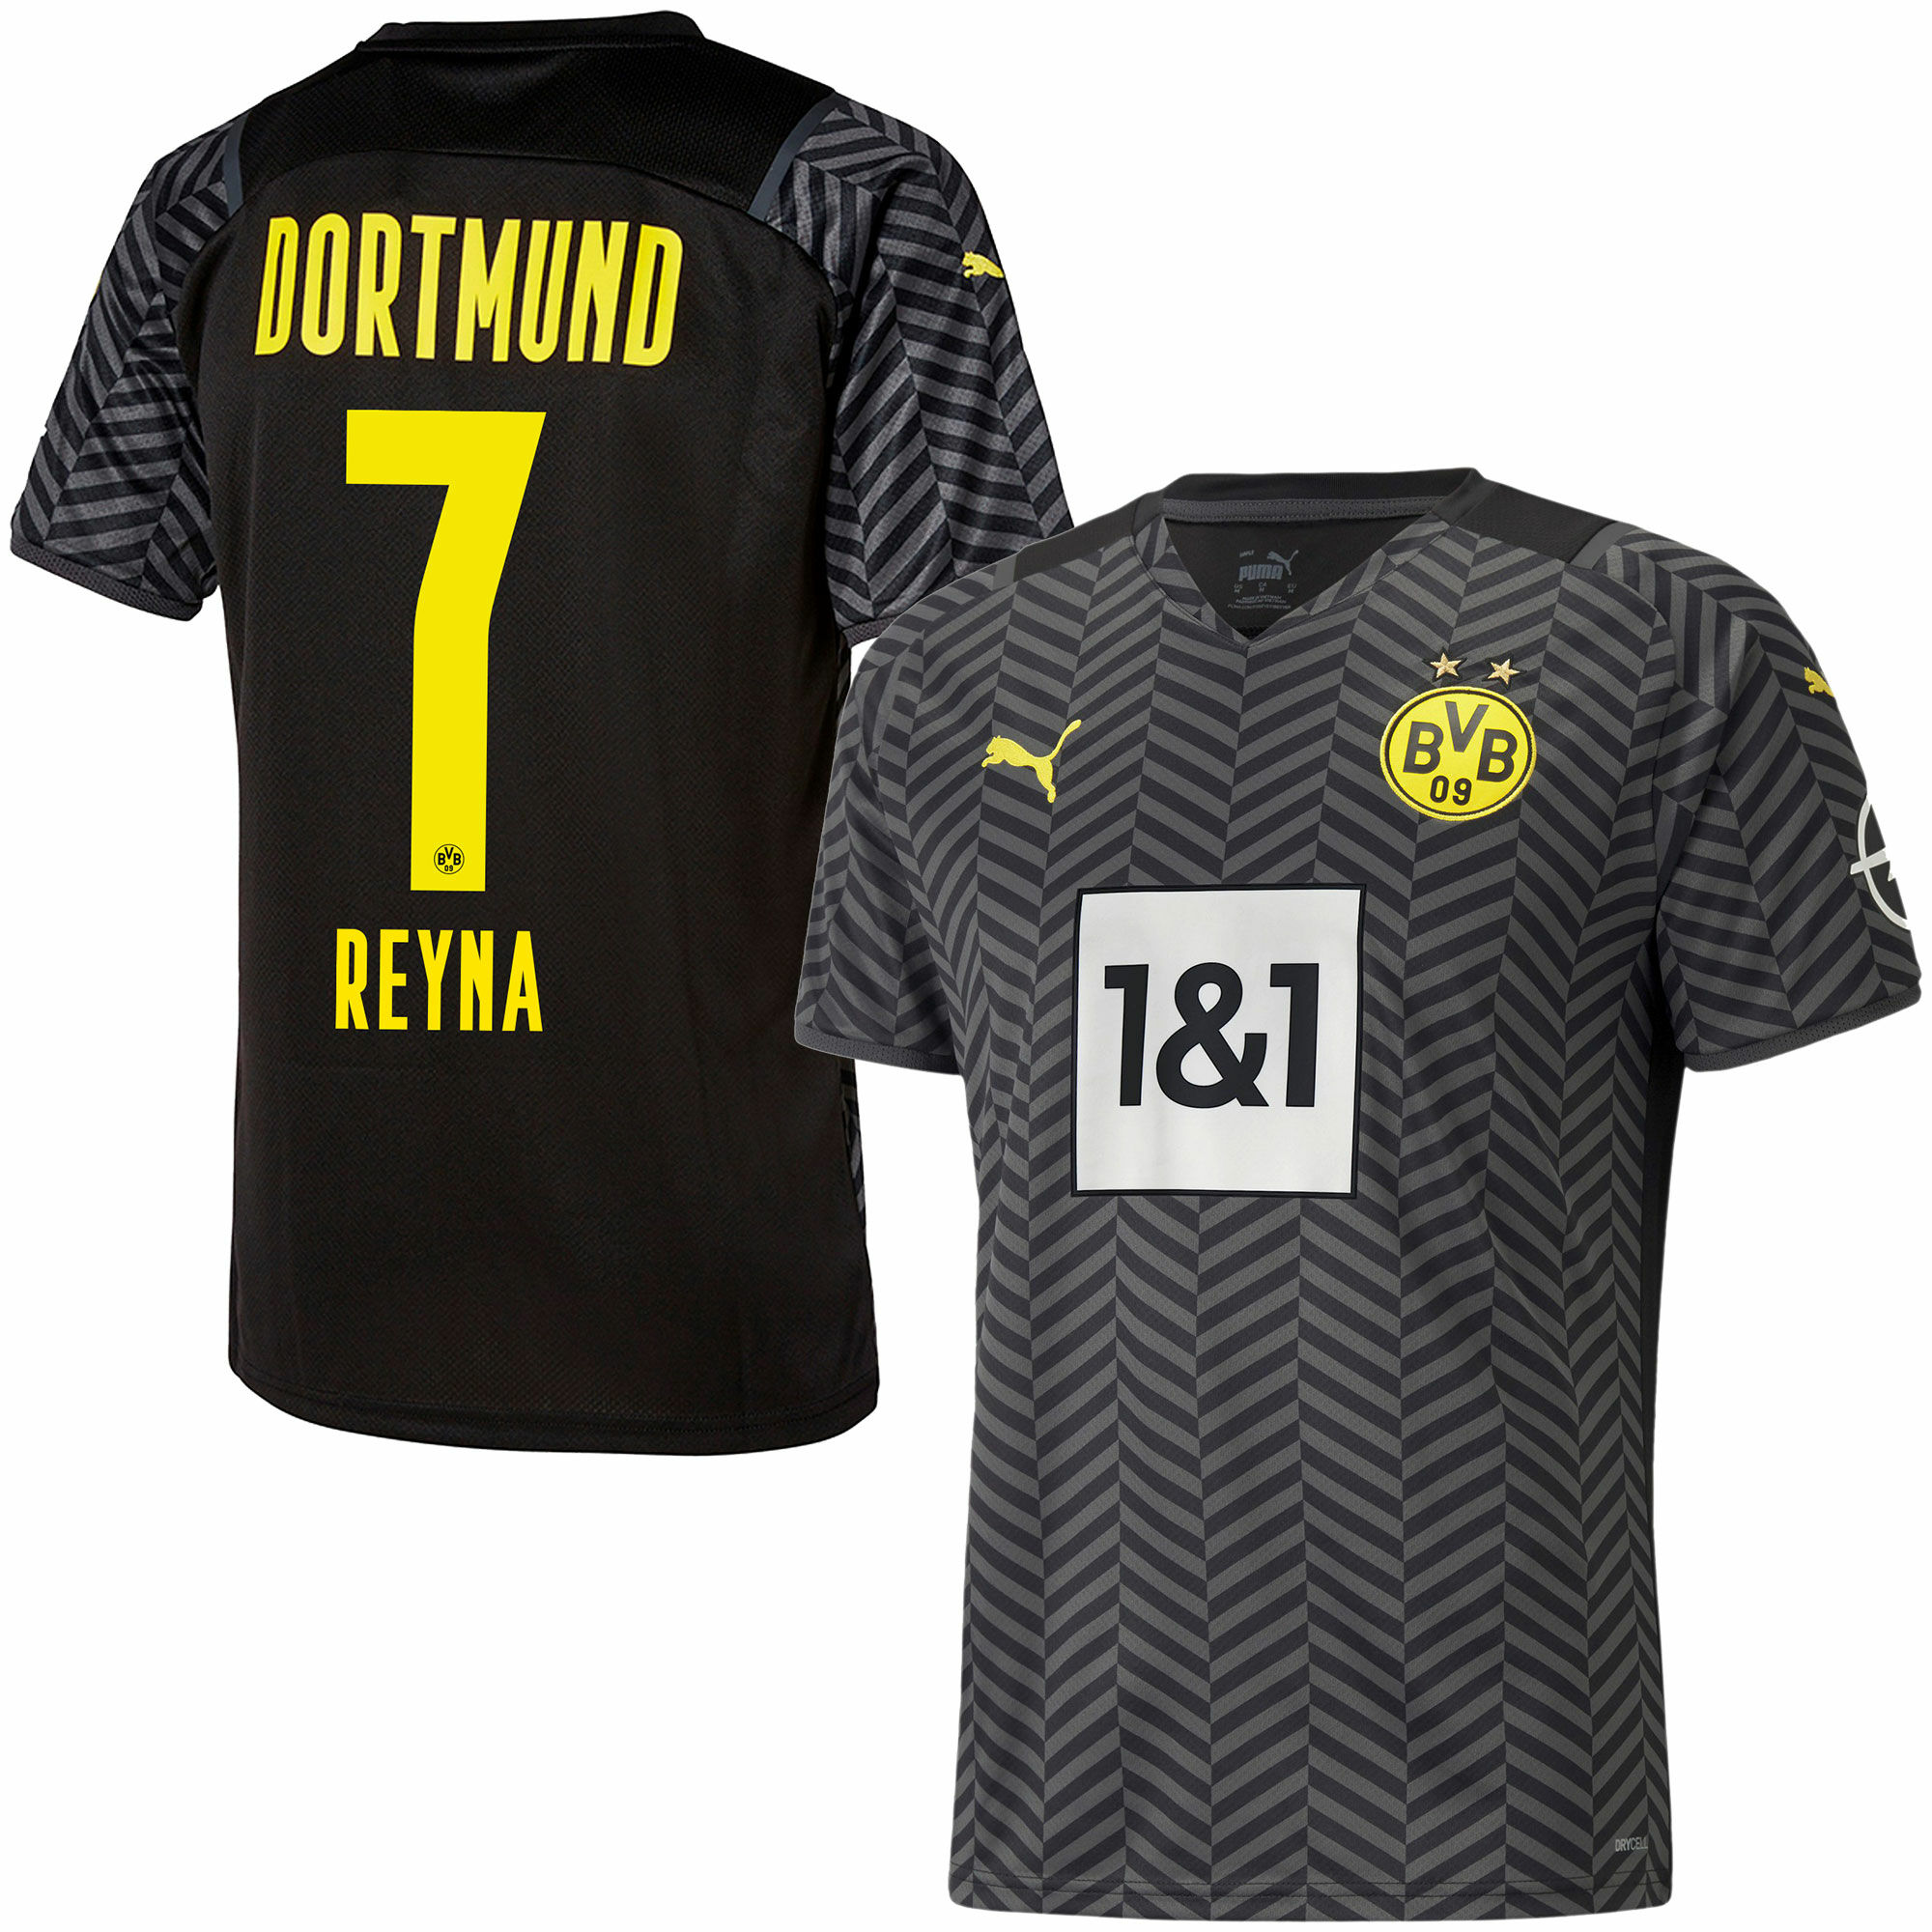 Borussia Dortmund - Dres fotbalový - sezóna 2021/22, černý, číslo 7, Giovanni Reyna, venkovní